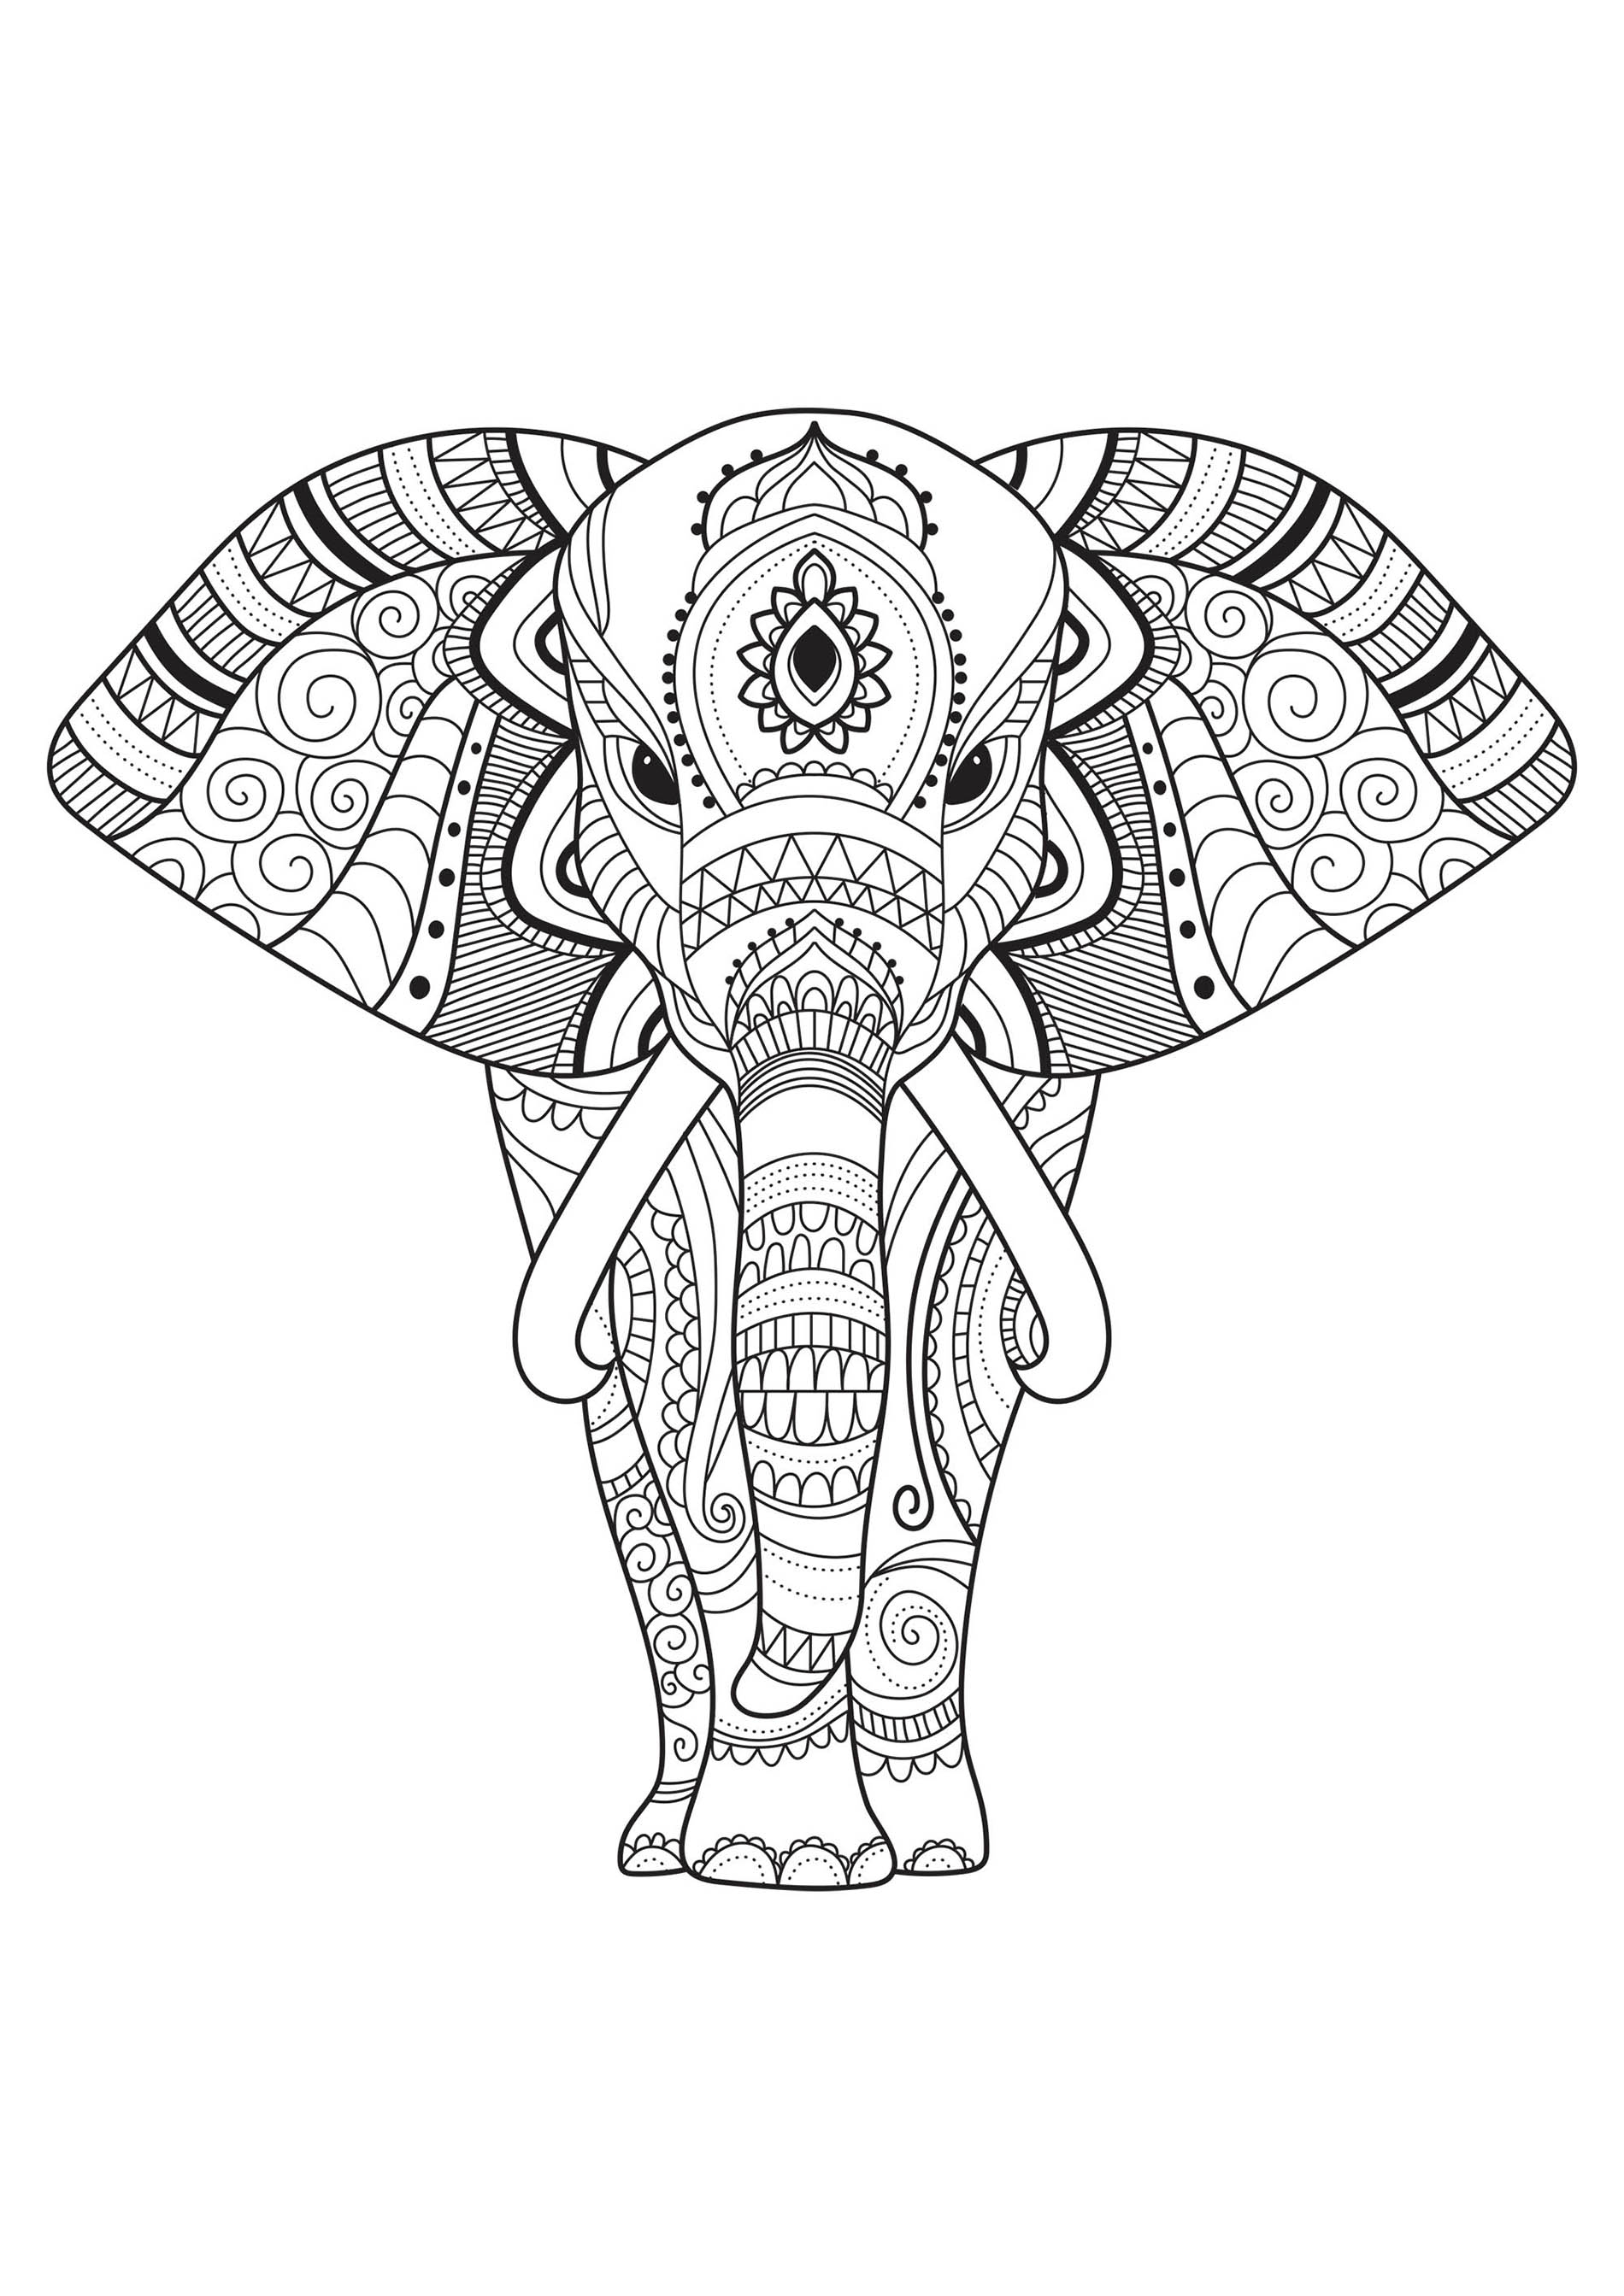 Colorea este elefante y sus bonitos dibujos